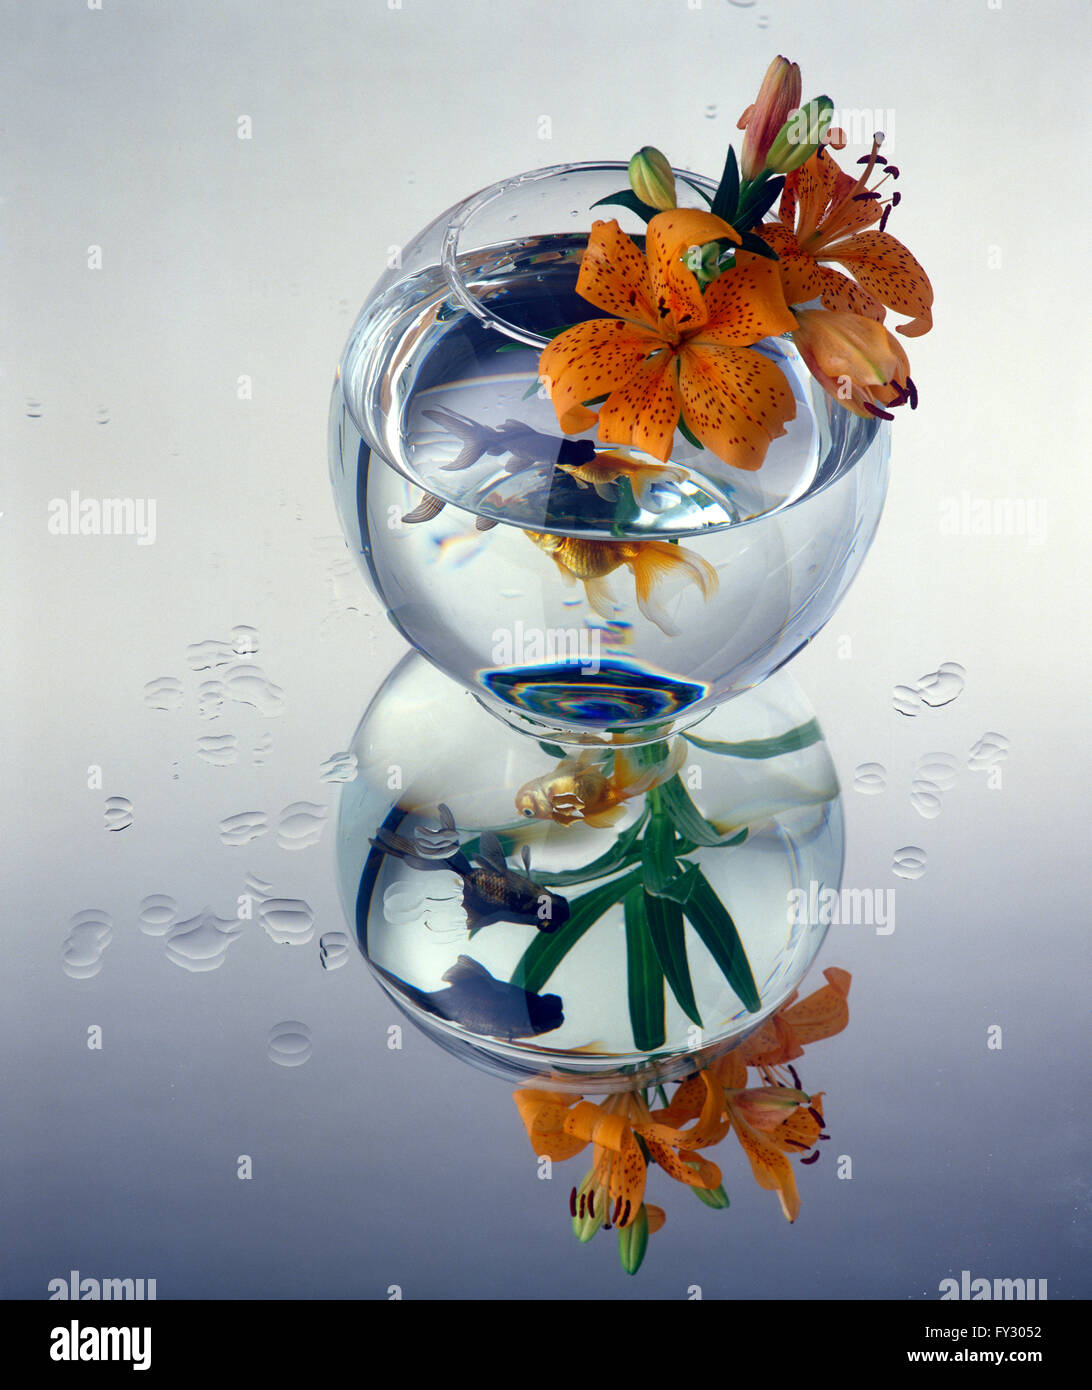 Un close-up di un recipiente contenente un goldfish e fiori d'arancio, all'interno. Foto Stock